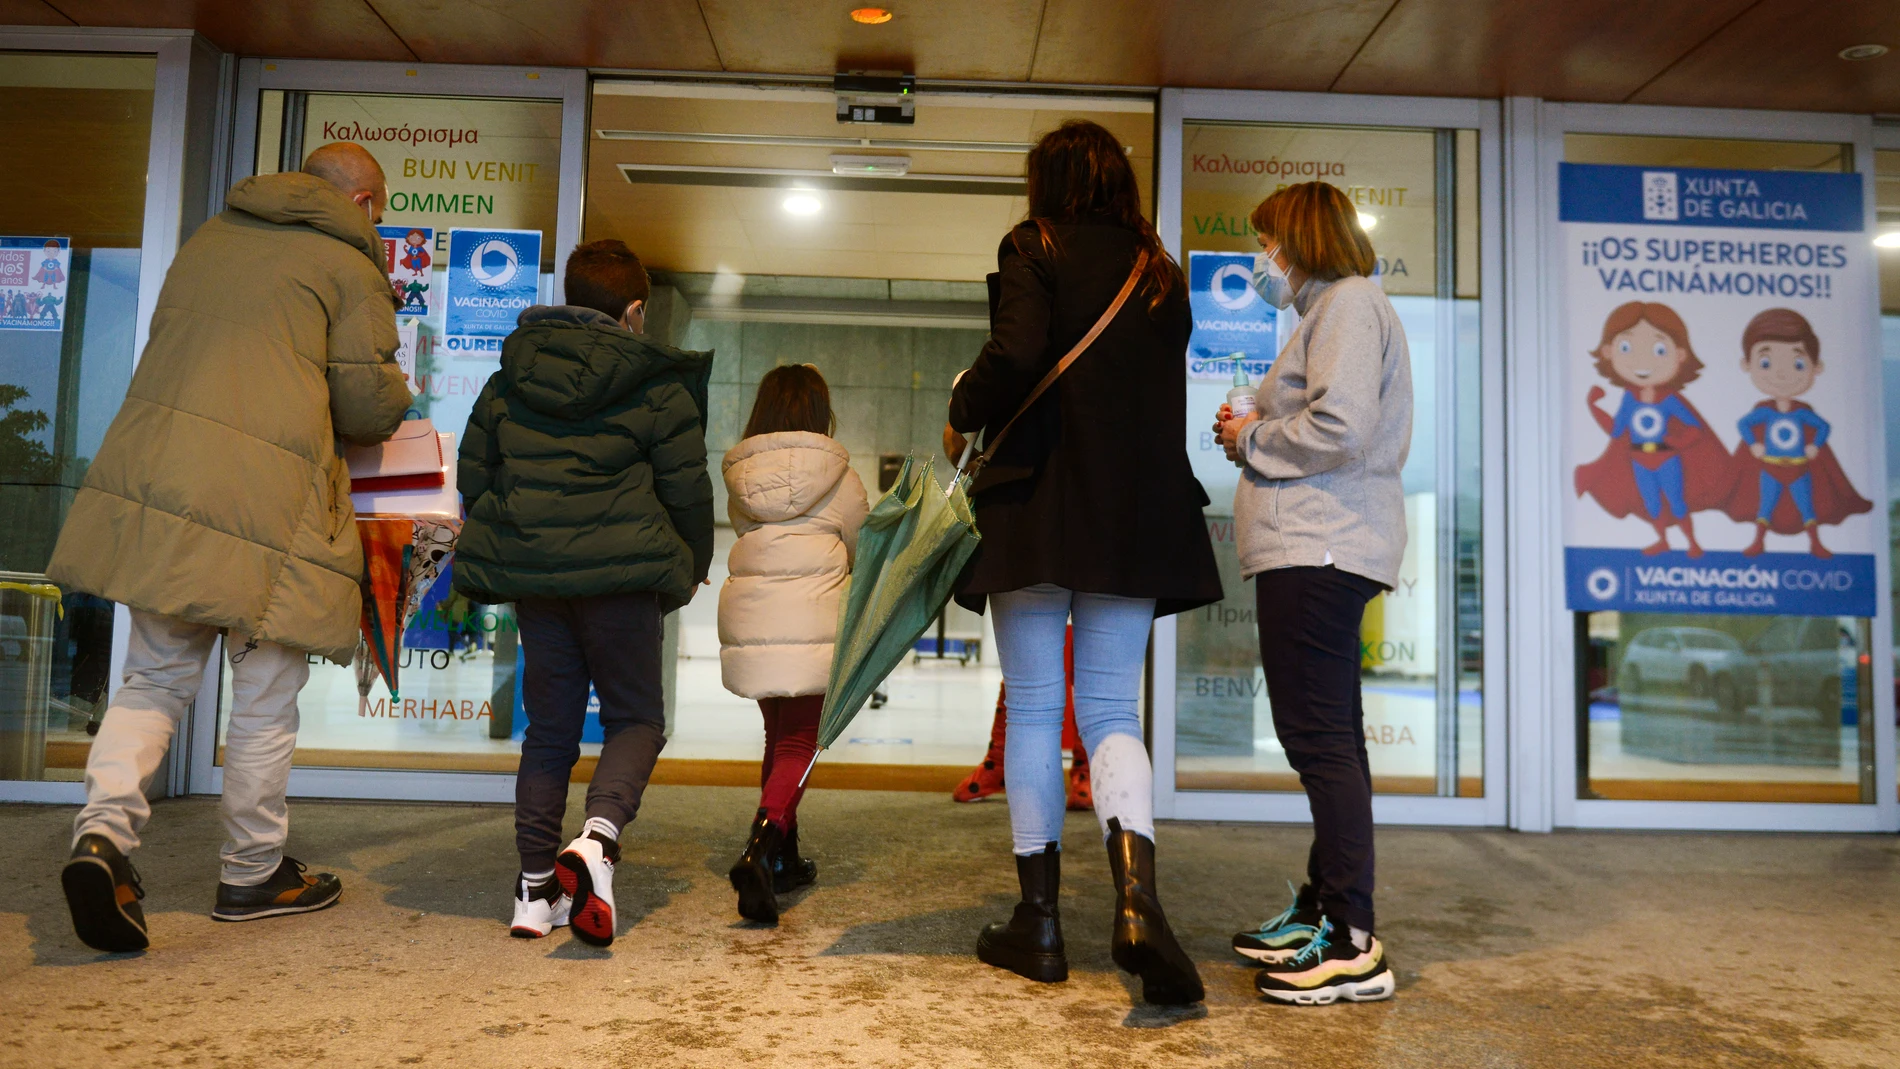 Varios niños acompañados de sus padres, a su llegada al recinto ferial Expourense (Galicia) para ser vacunados